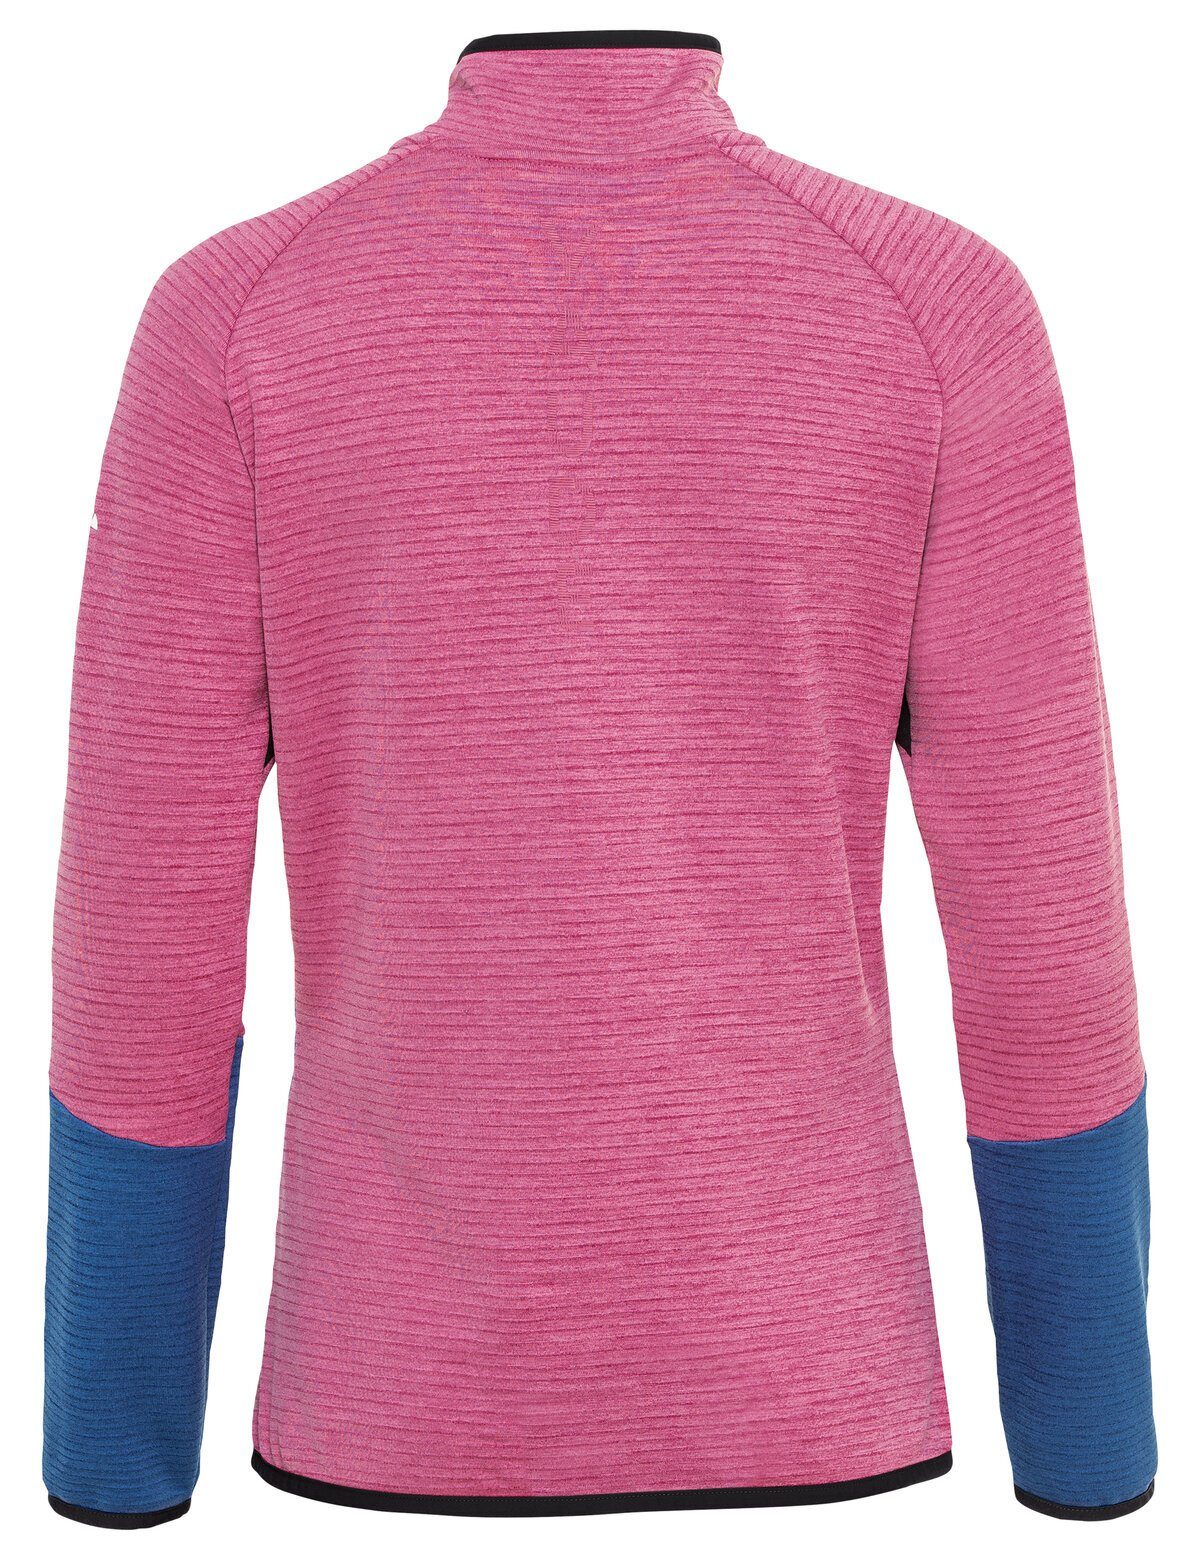 rich Larice VAUDE Jacket Klimaneutral HZ Women's Outdoorjacke kompensiert pink Fleece (1-St)